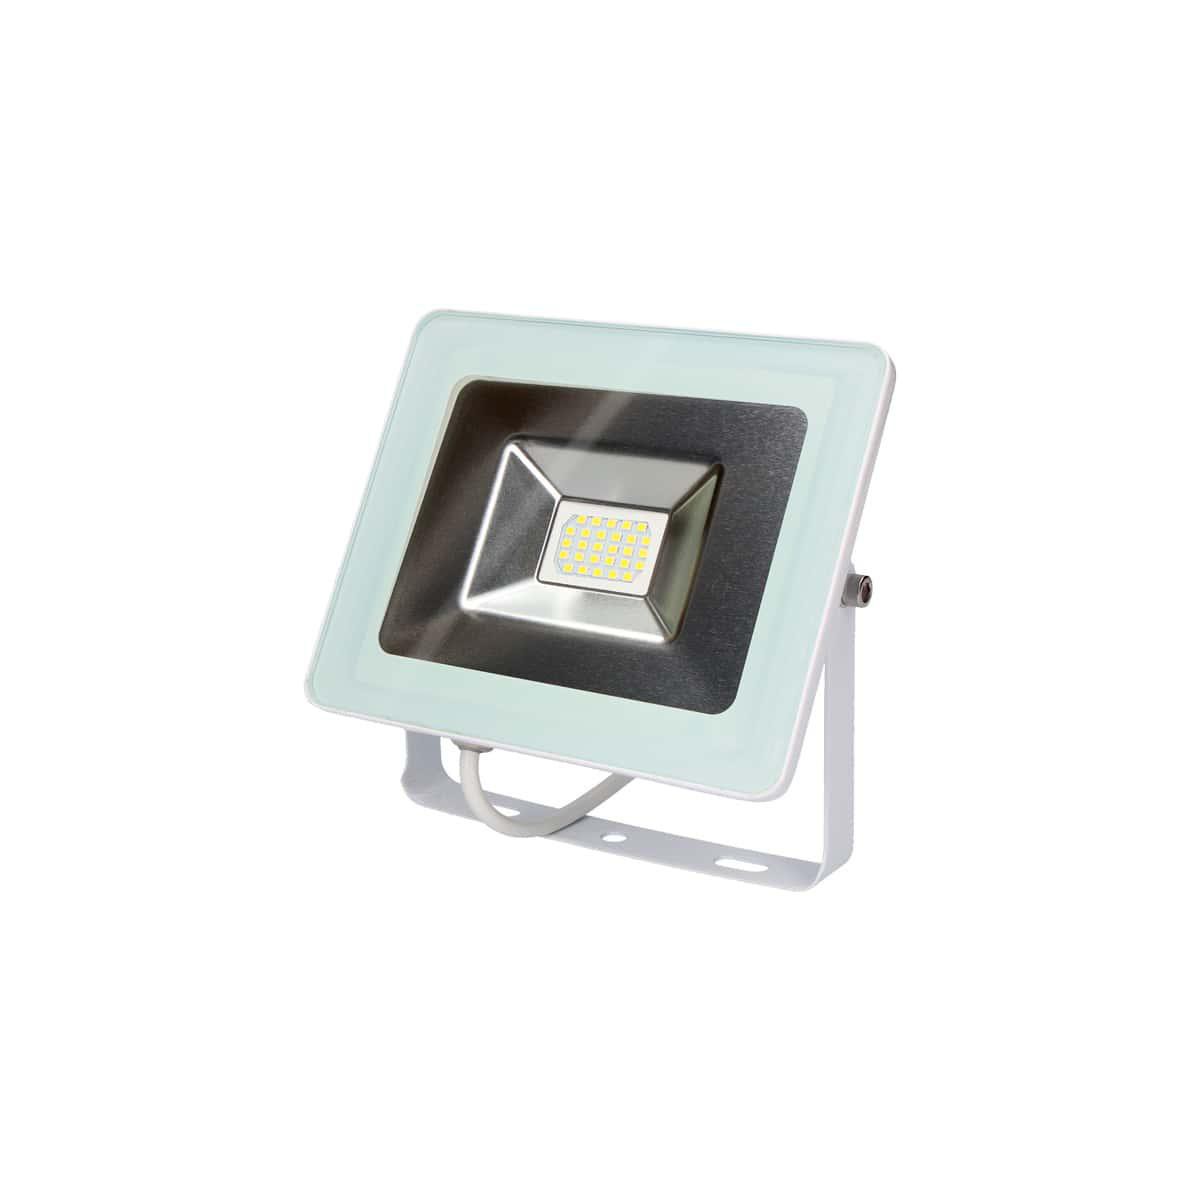 Edm - Projecteur MultiLed EDM Lumière froide 6400K - 10W 700 Lumens - Blanc - Ampoules LED